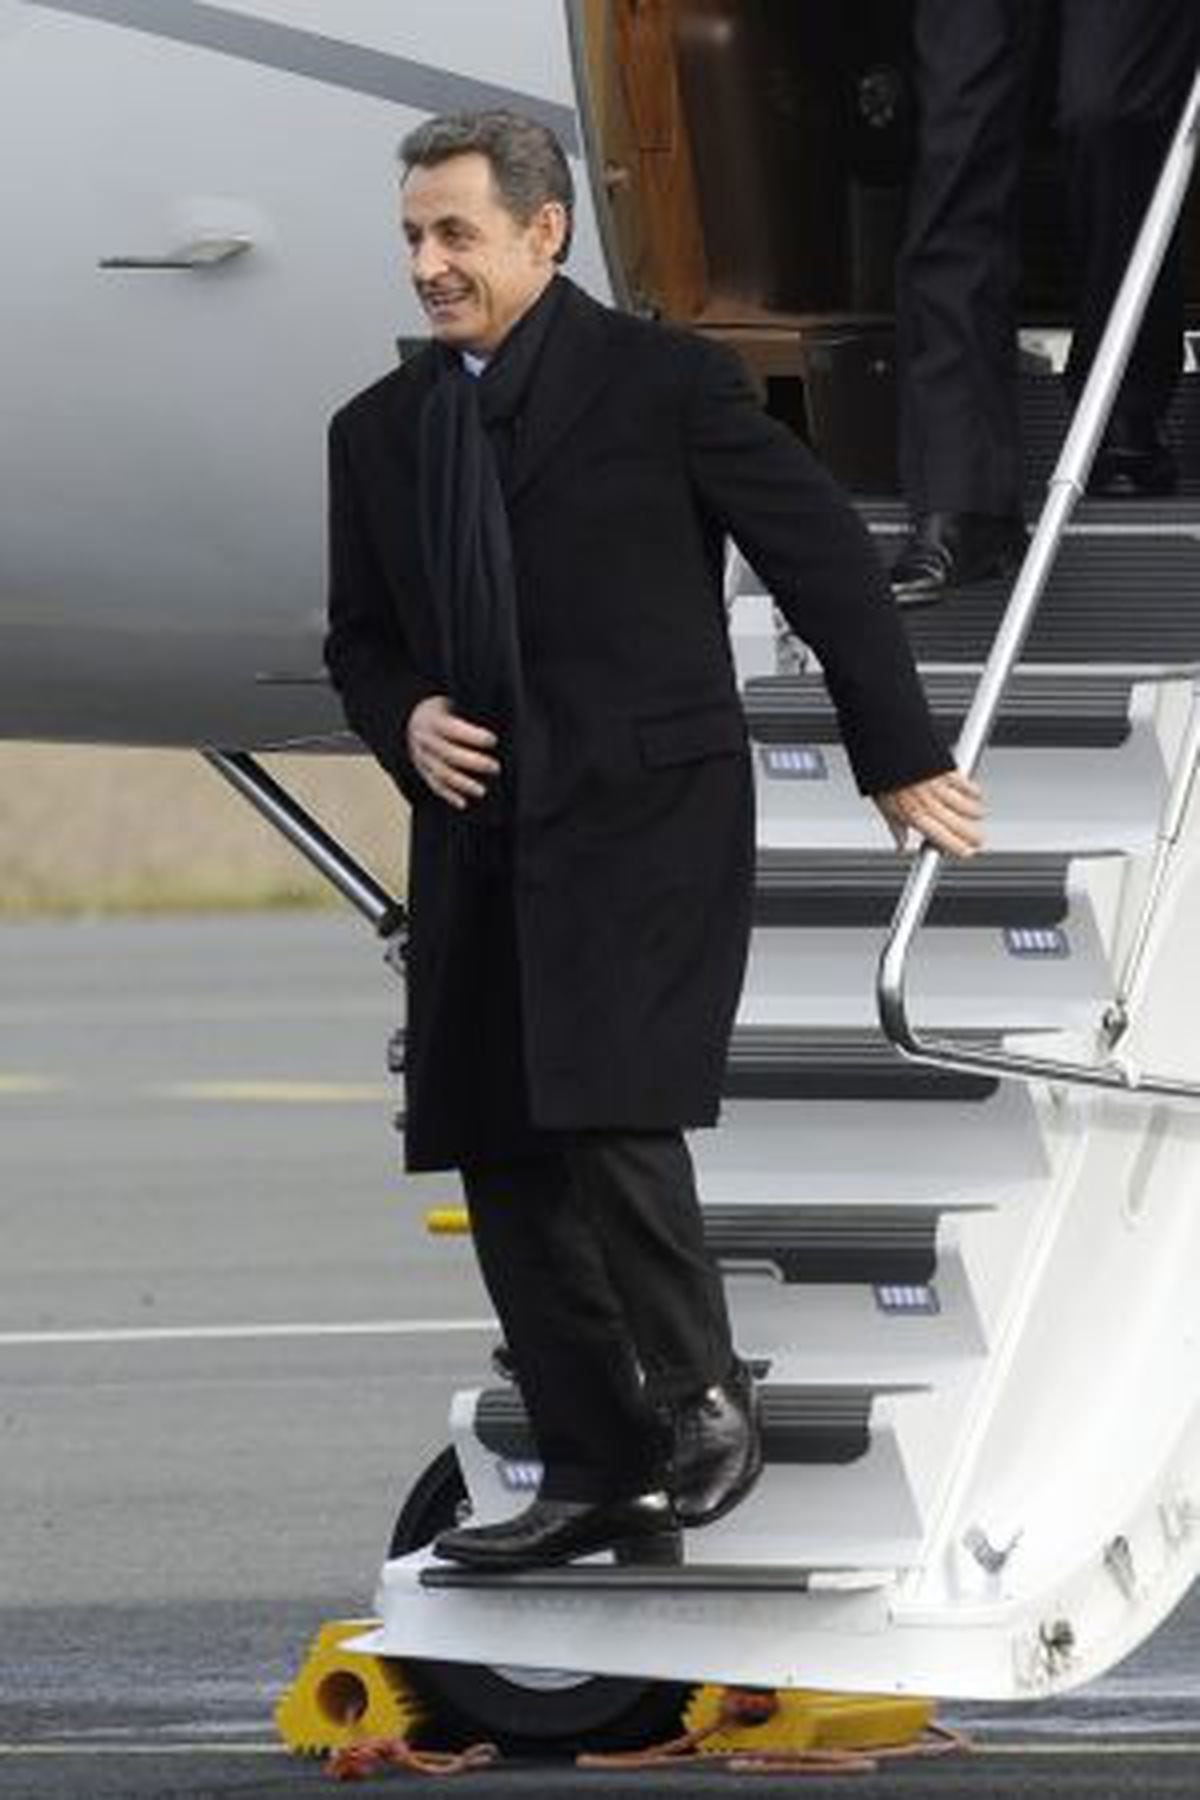 Dónde Sarkozy sus zapatos de tacón? | Economía | EL PAÍS